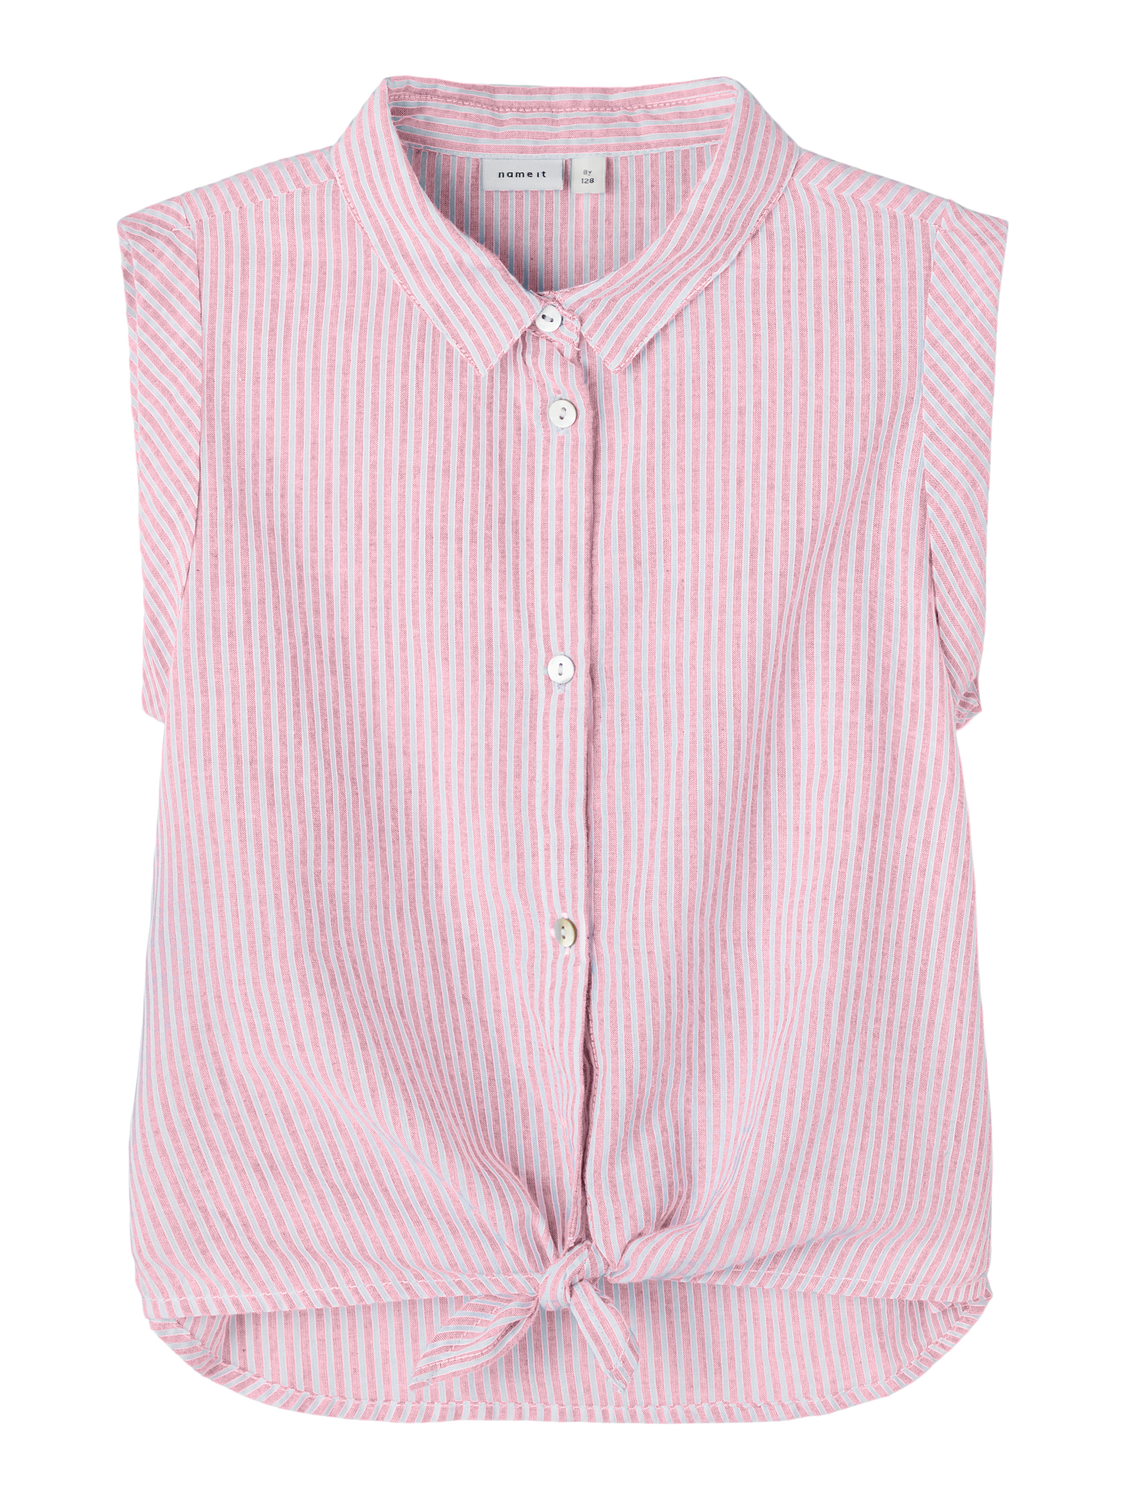 NKFFEMMA Shirts - Parfait Pink